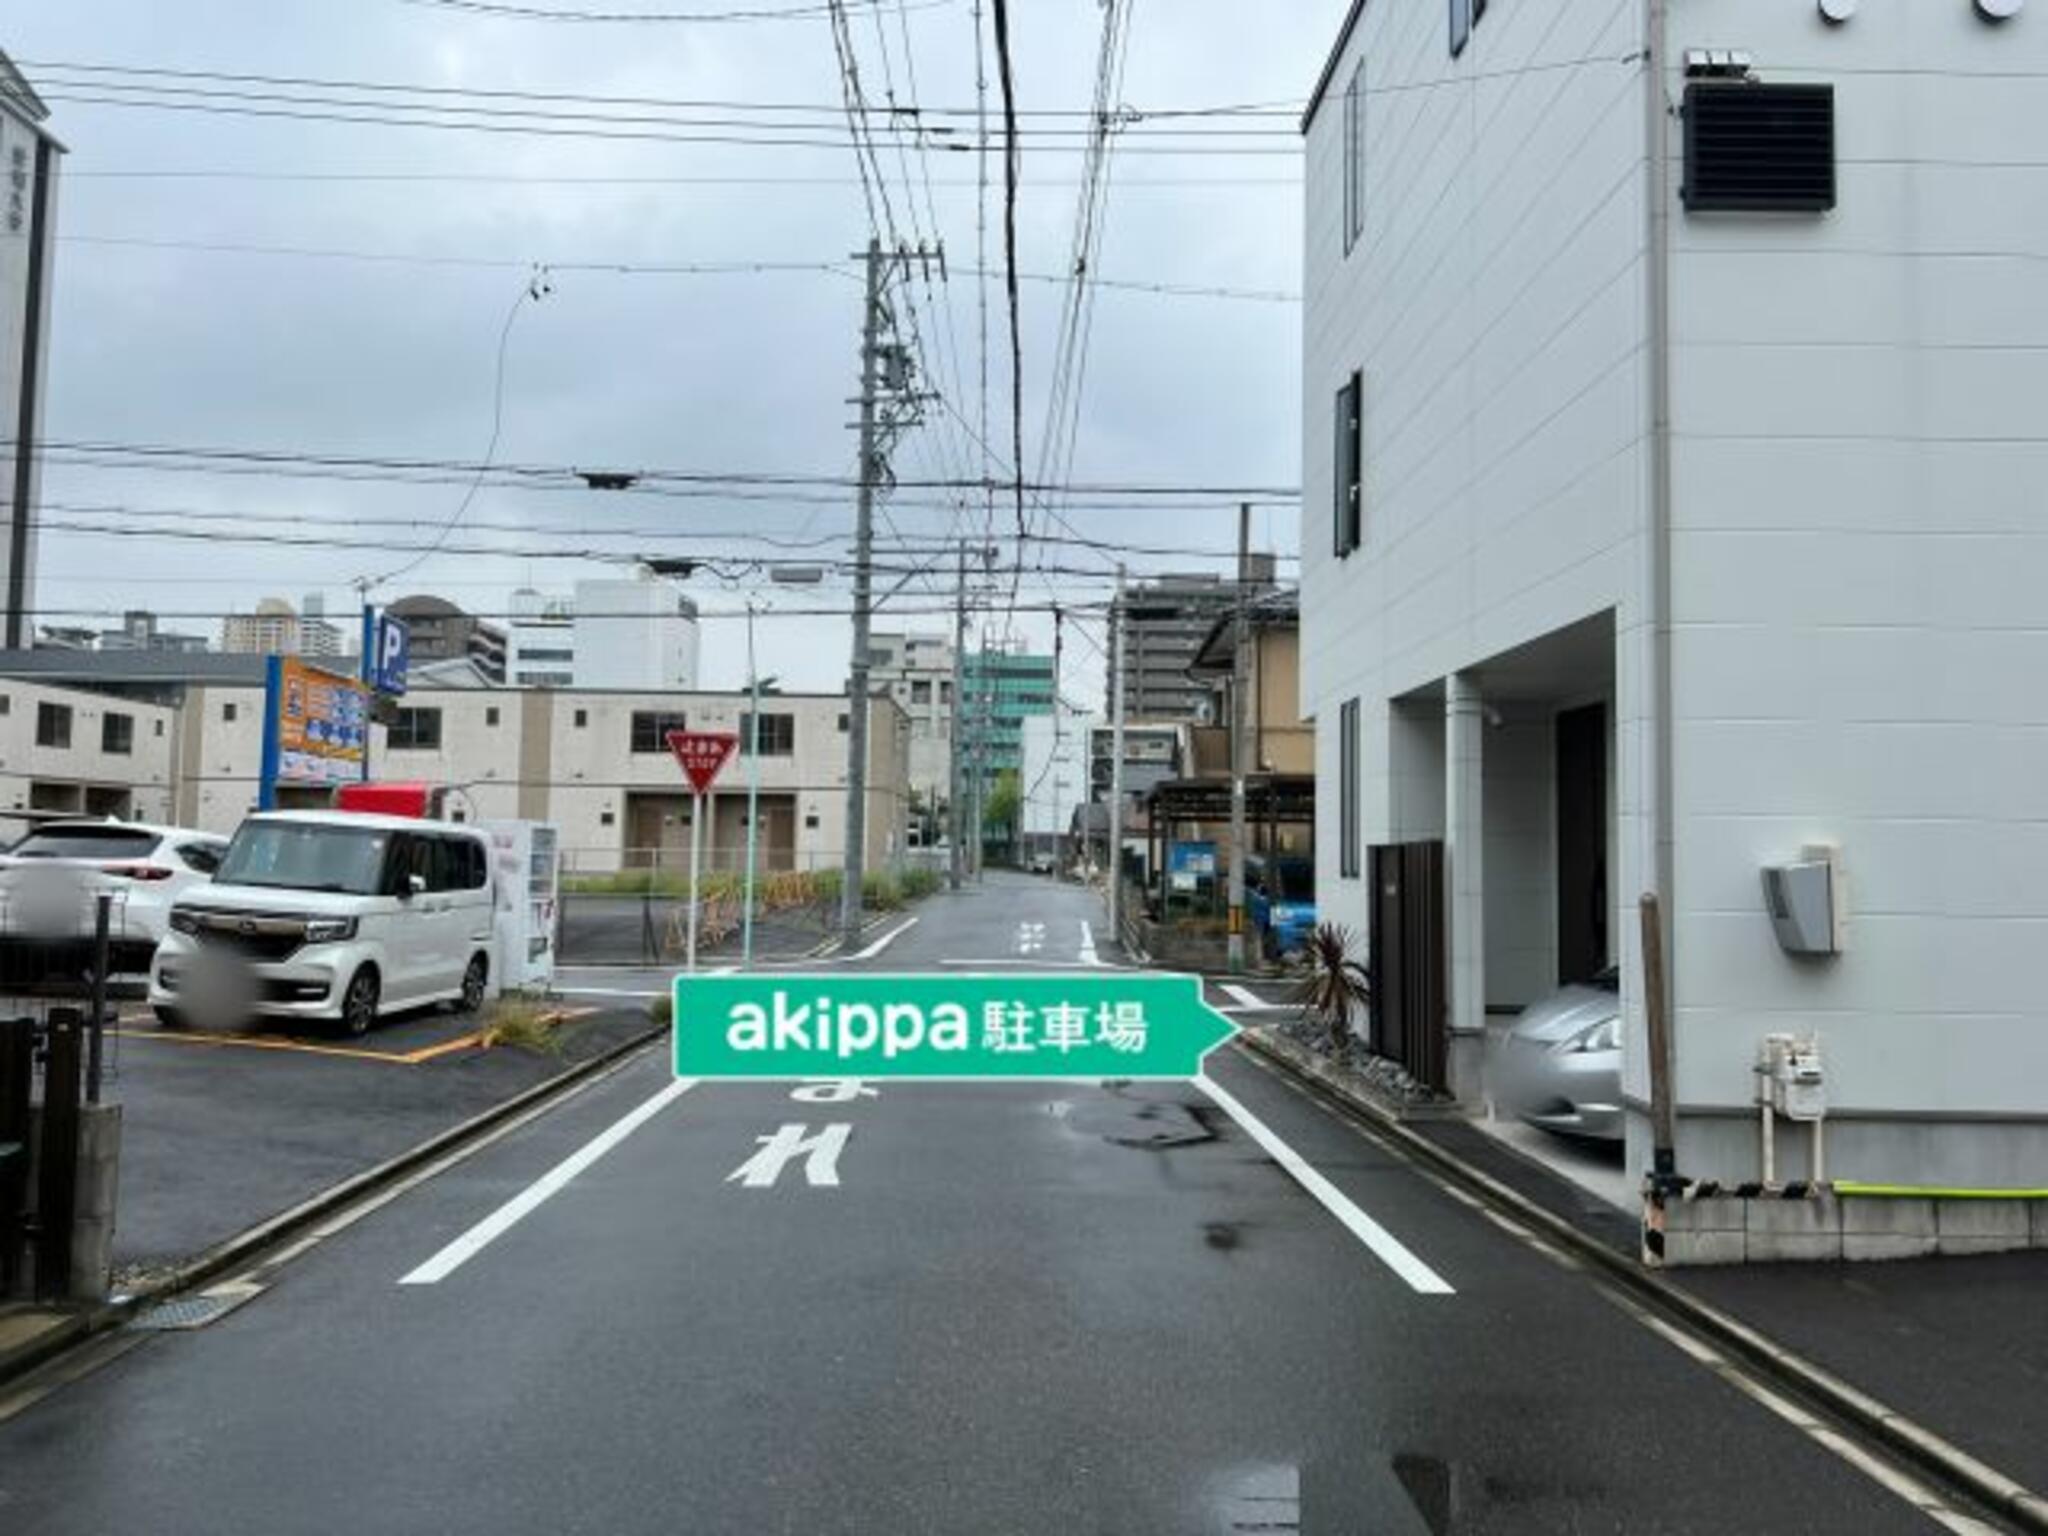 akippa駐車場:愛知県名古屋市東区筒井2丁目6-22の代表写真6